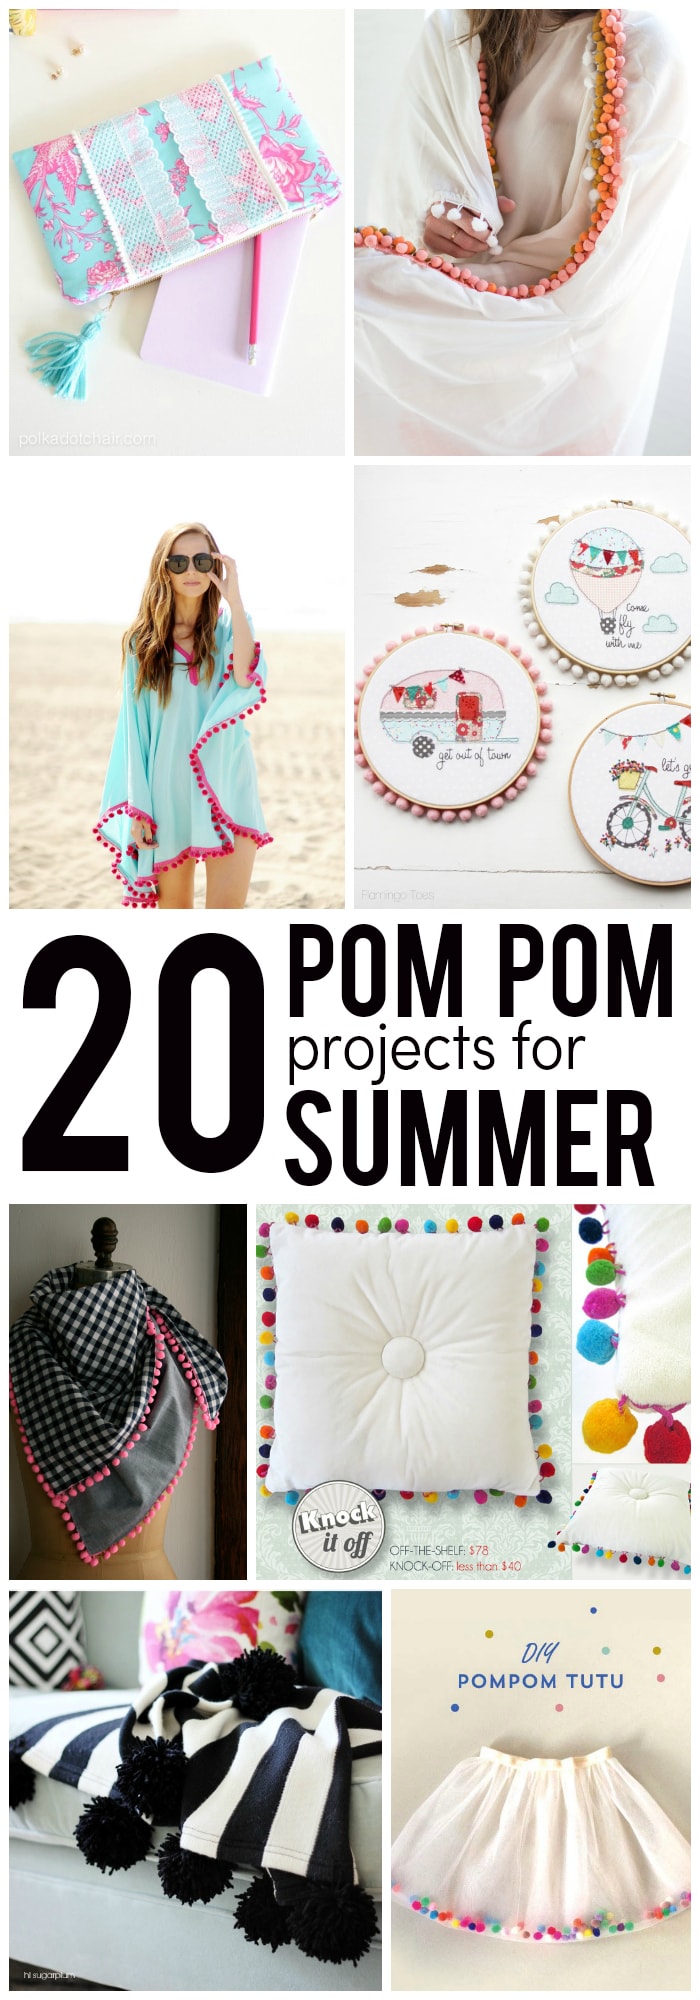 20 projets de couture de pompons parfaits pour l'été !!